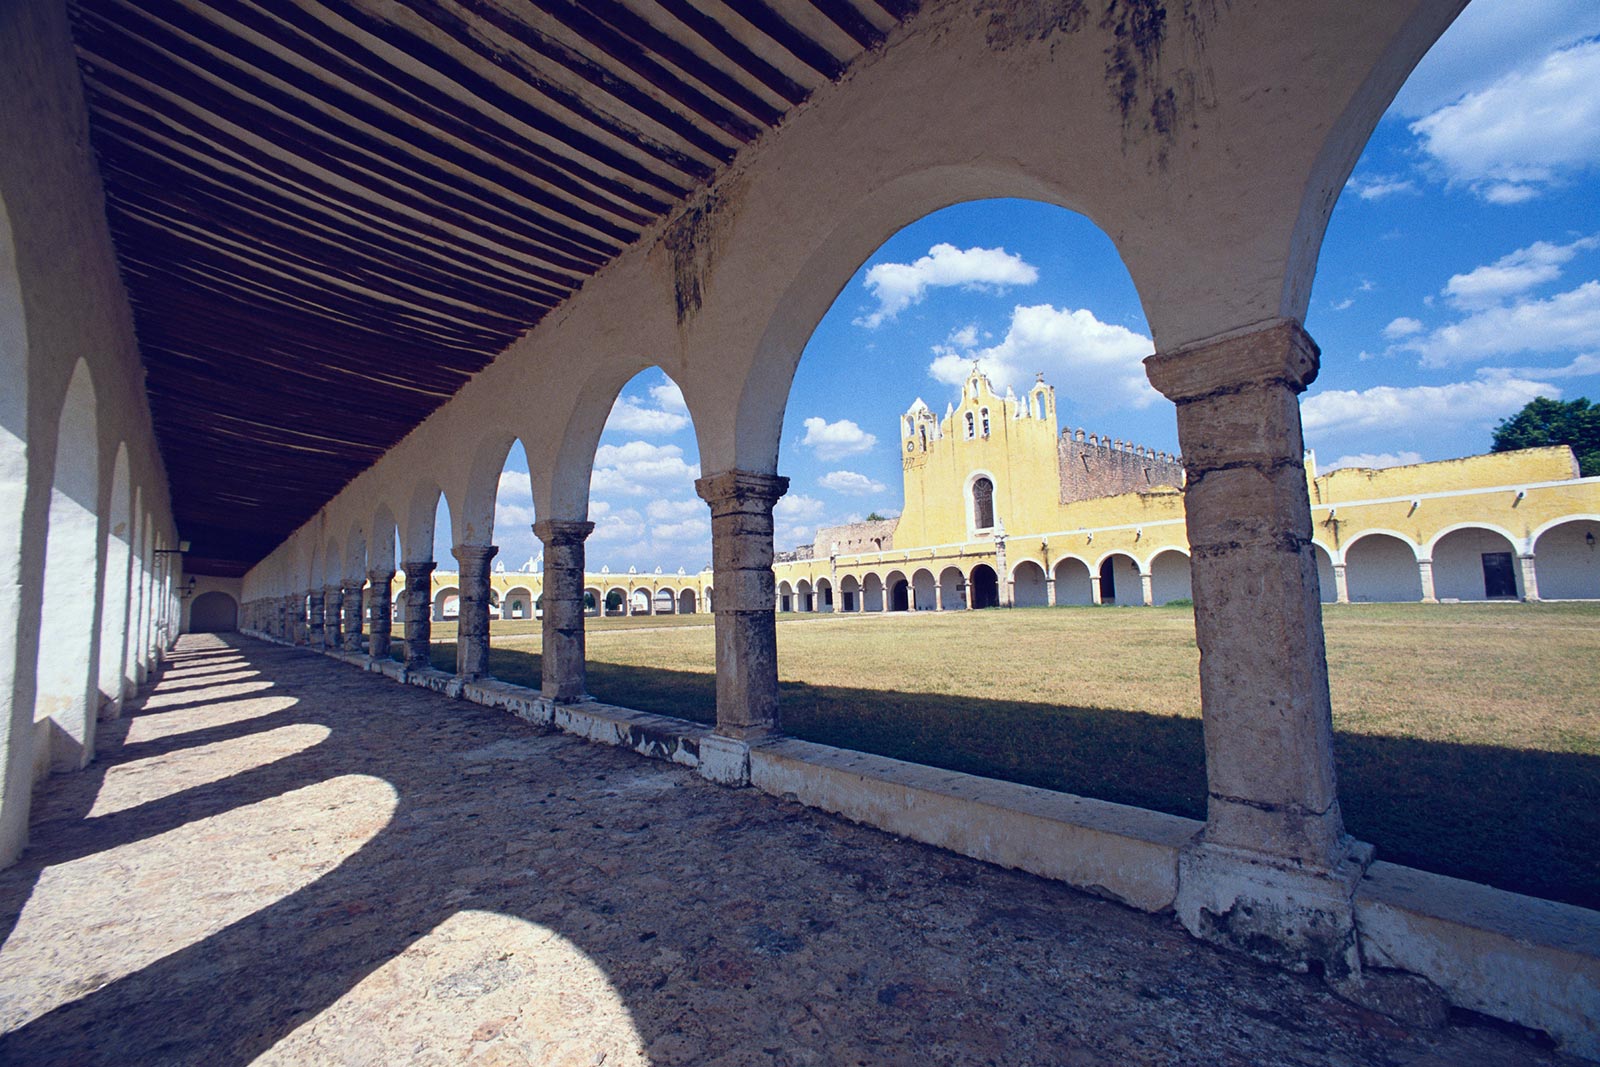 Monastery of Izamal, Yucatan, Mexico